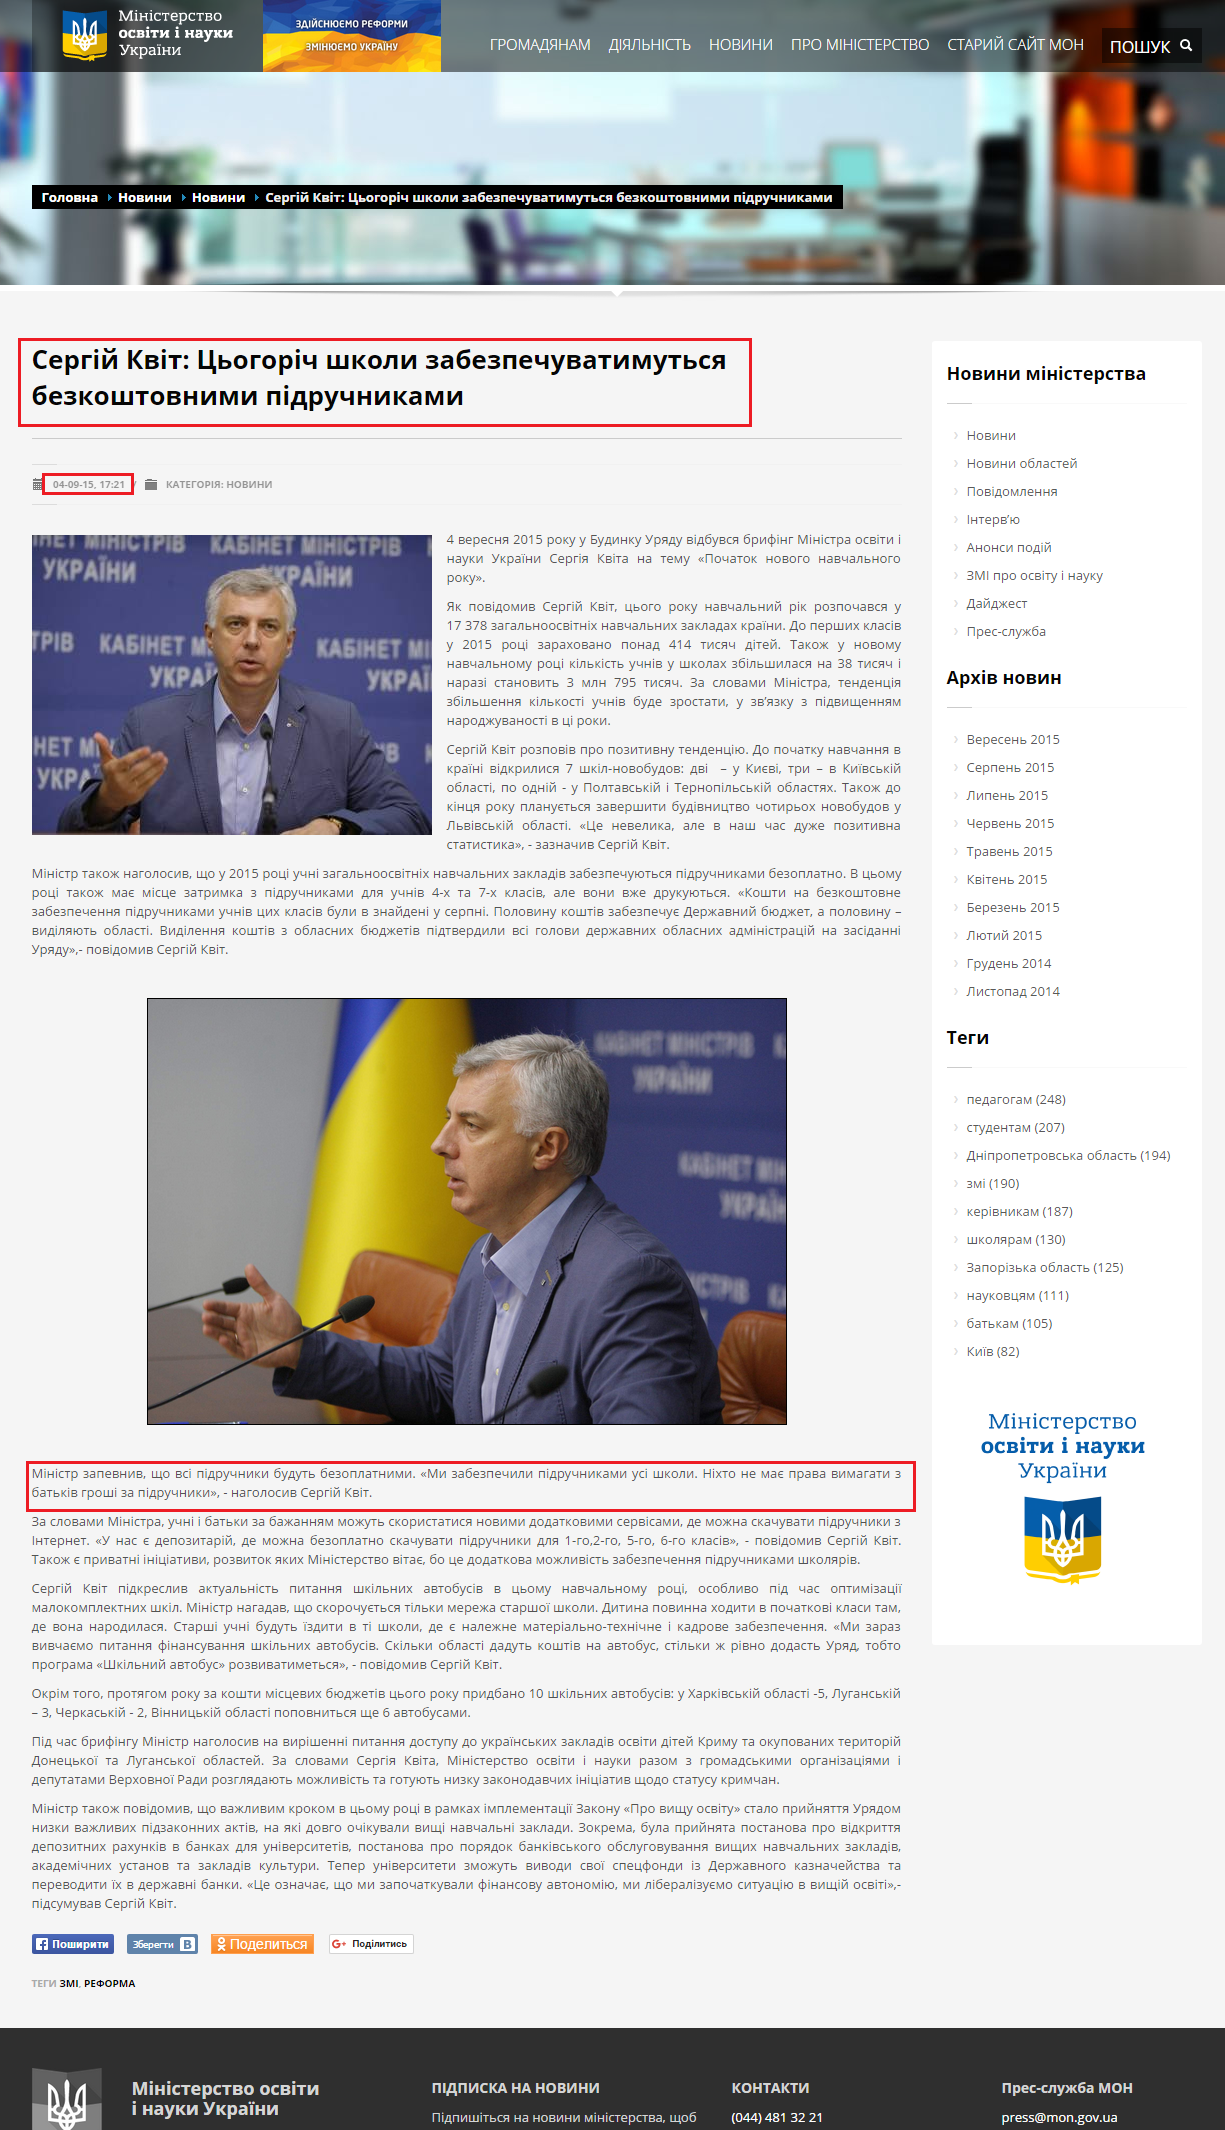 http://mon.gov.ua/usi-novivni/novini/2015/09/04/kvit/